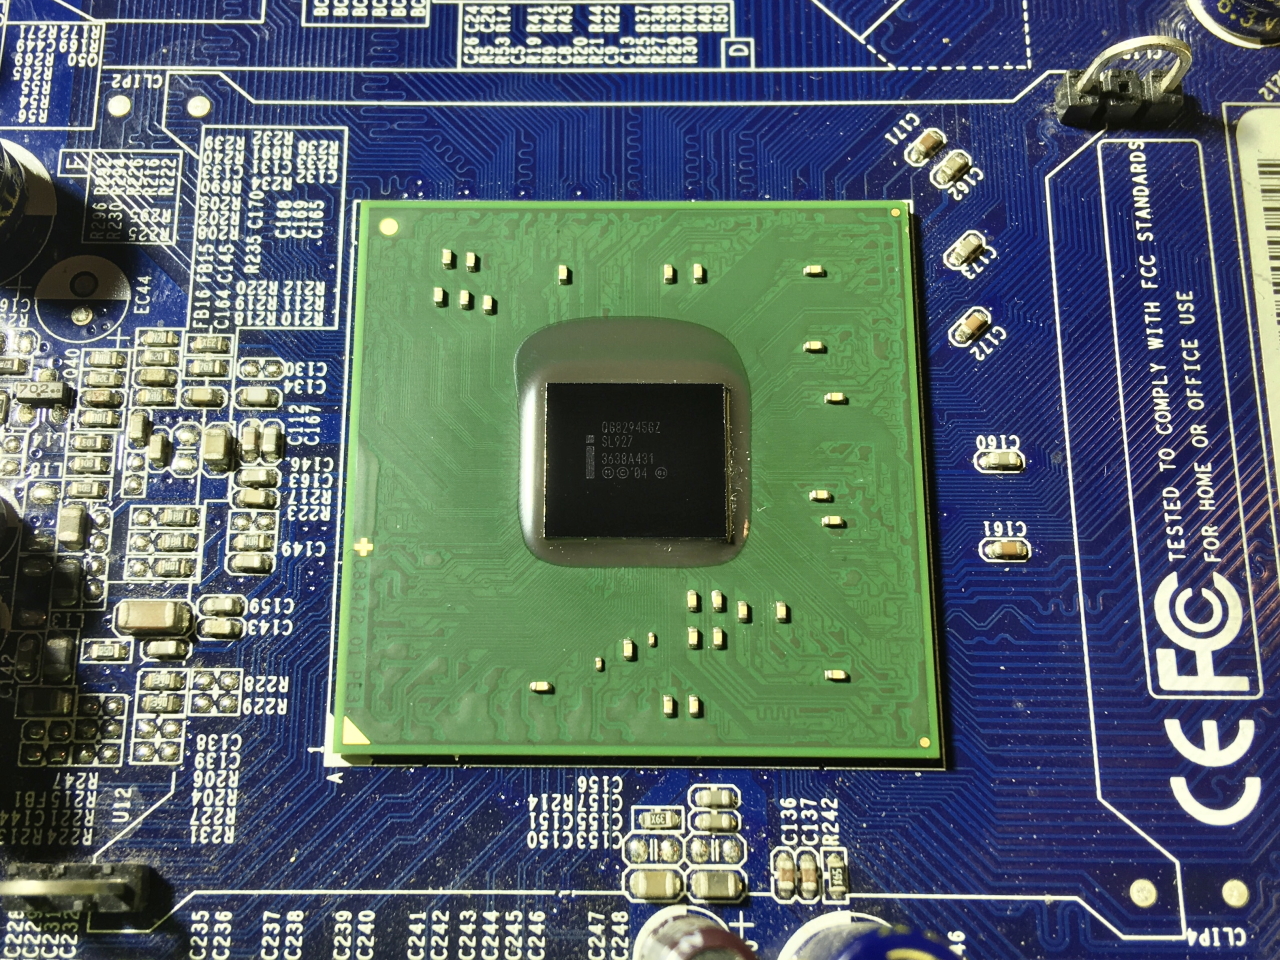 foxconn-945GZ-chipset.jpg